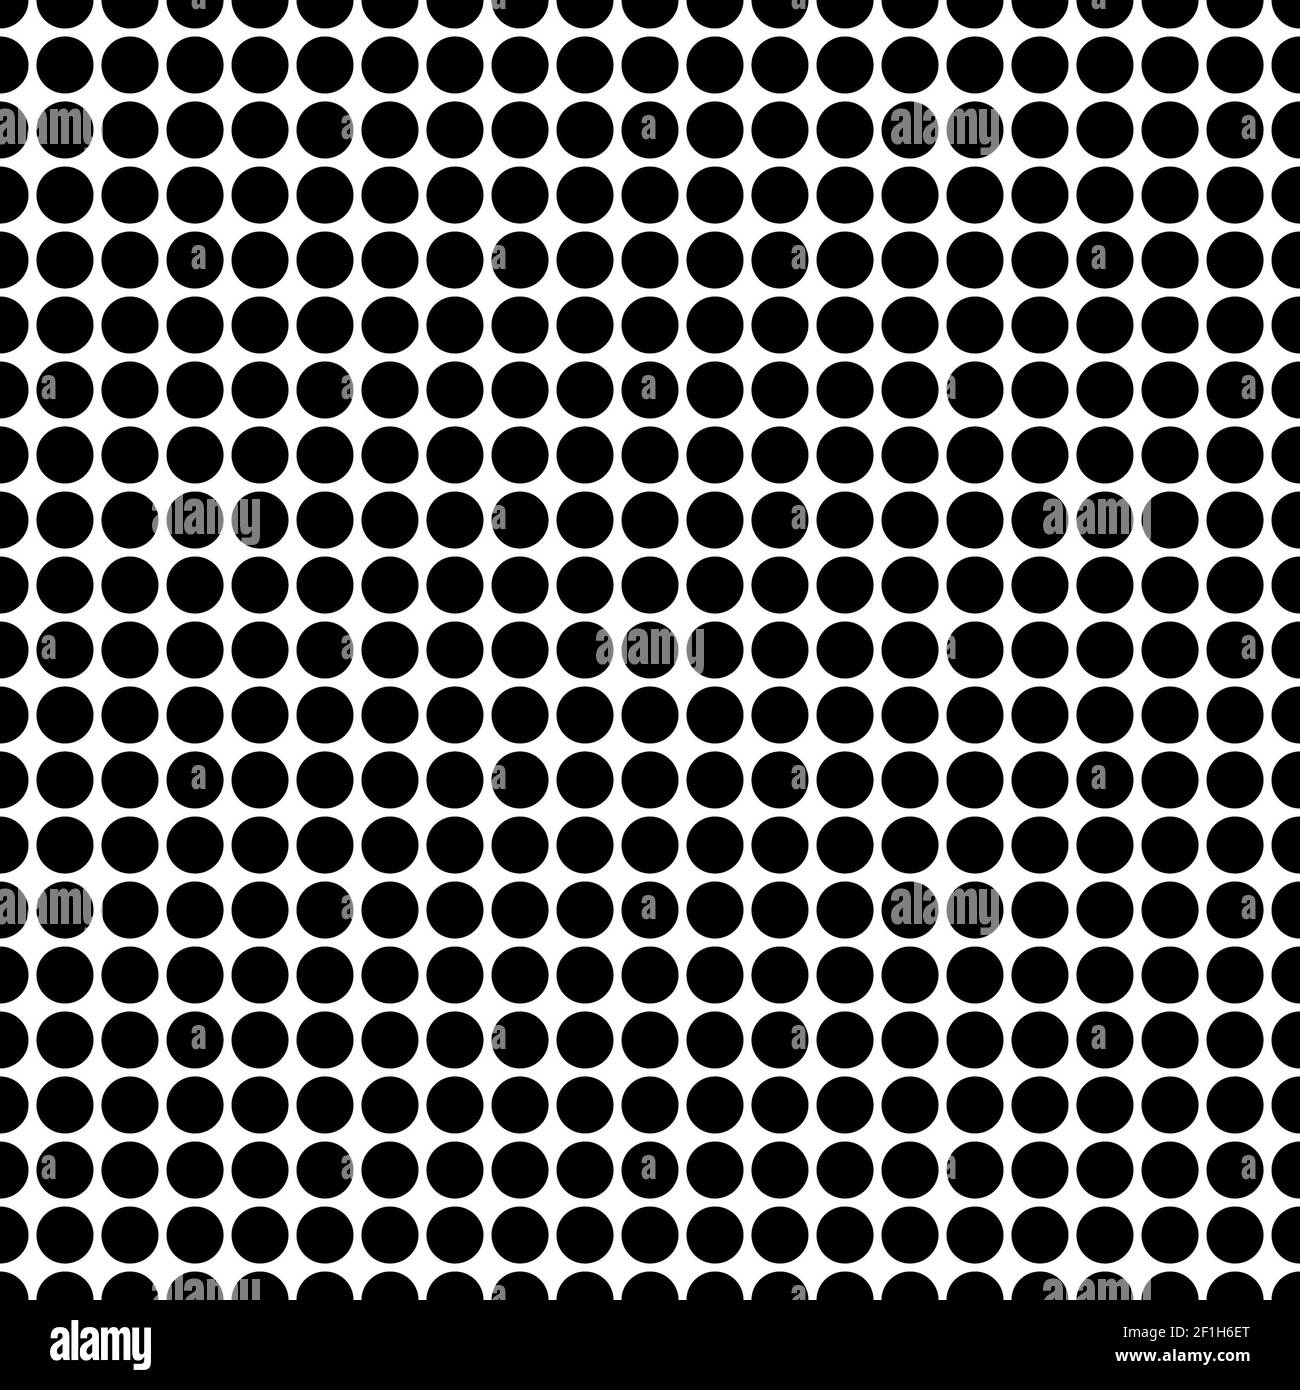 Arrière-plan transparent avec points noirs Banque D'Images